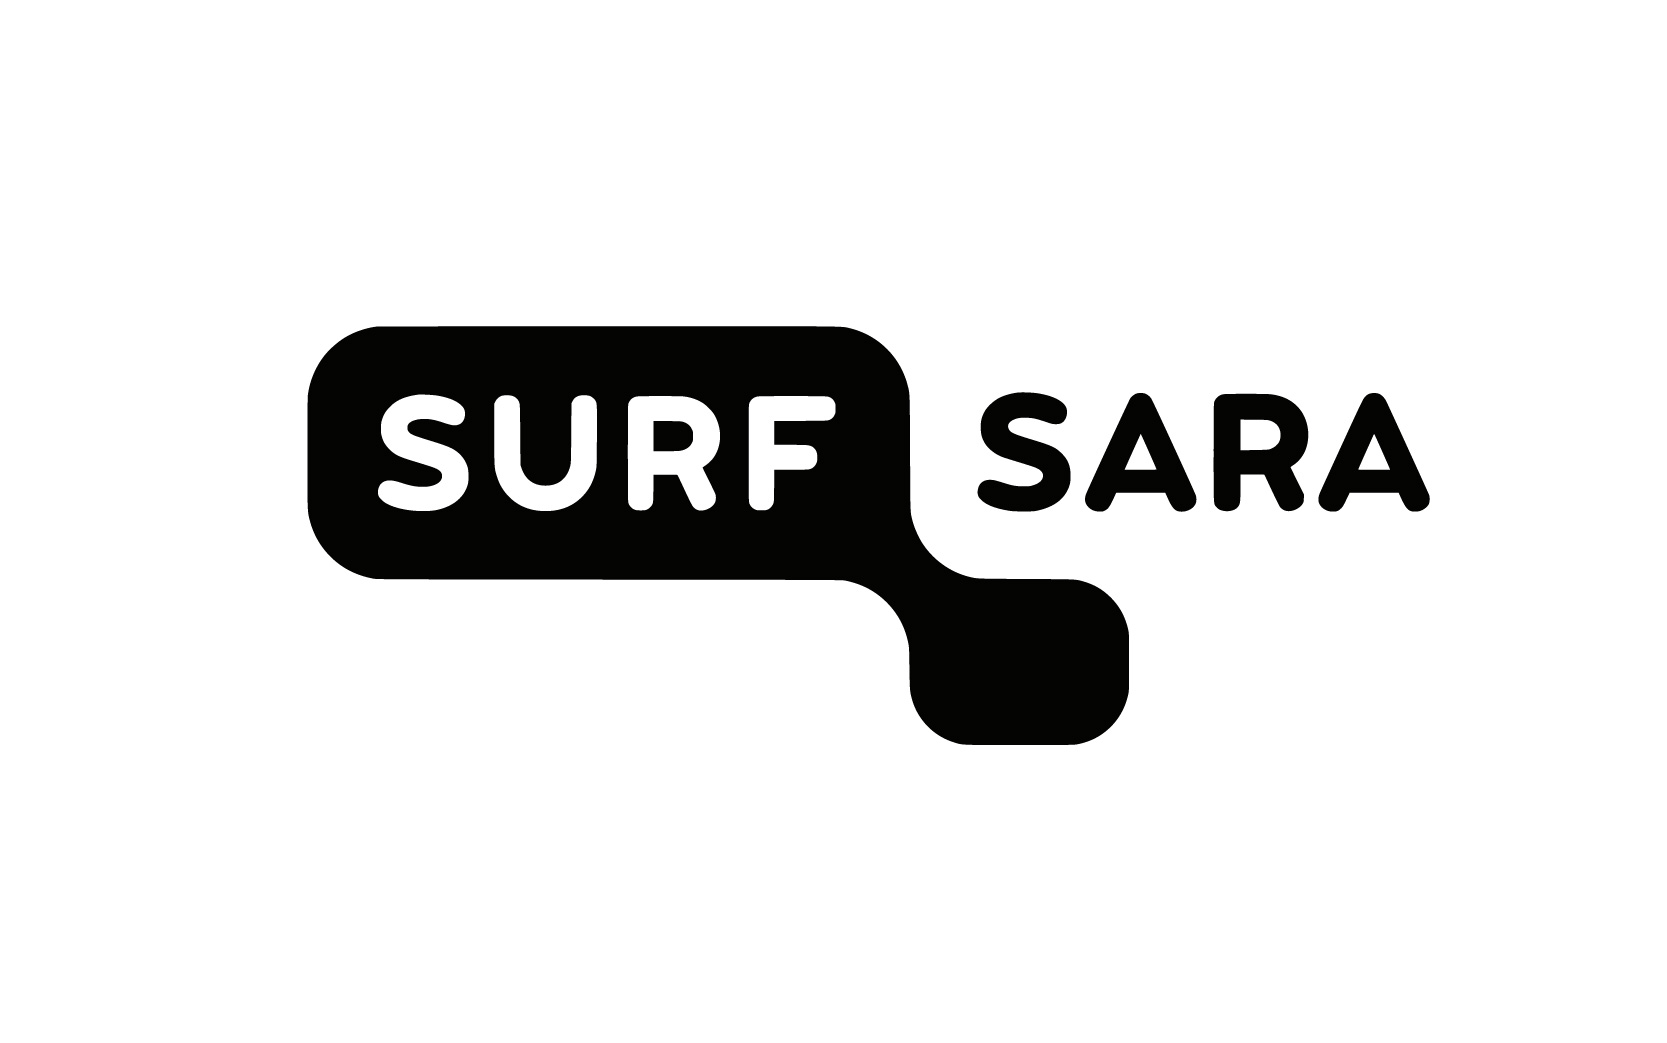 Surf Sara